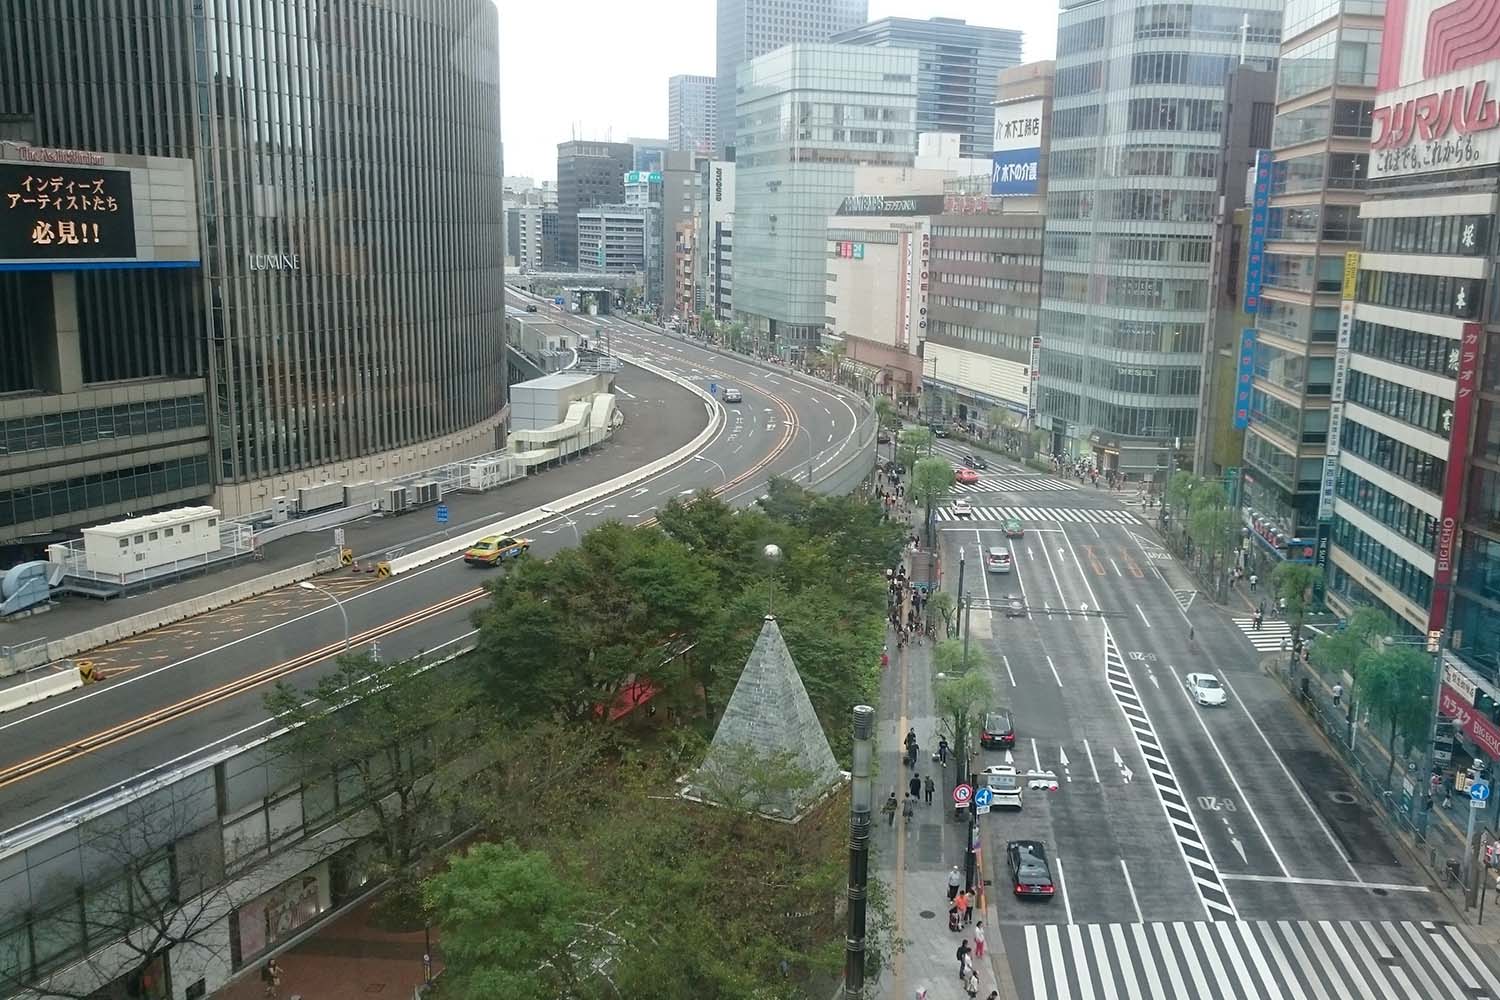 東京高速道路と銀座のビル街の写真